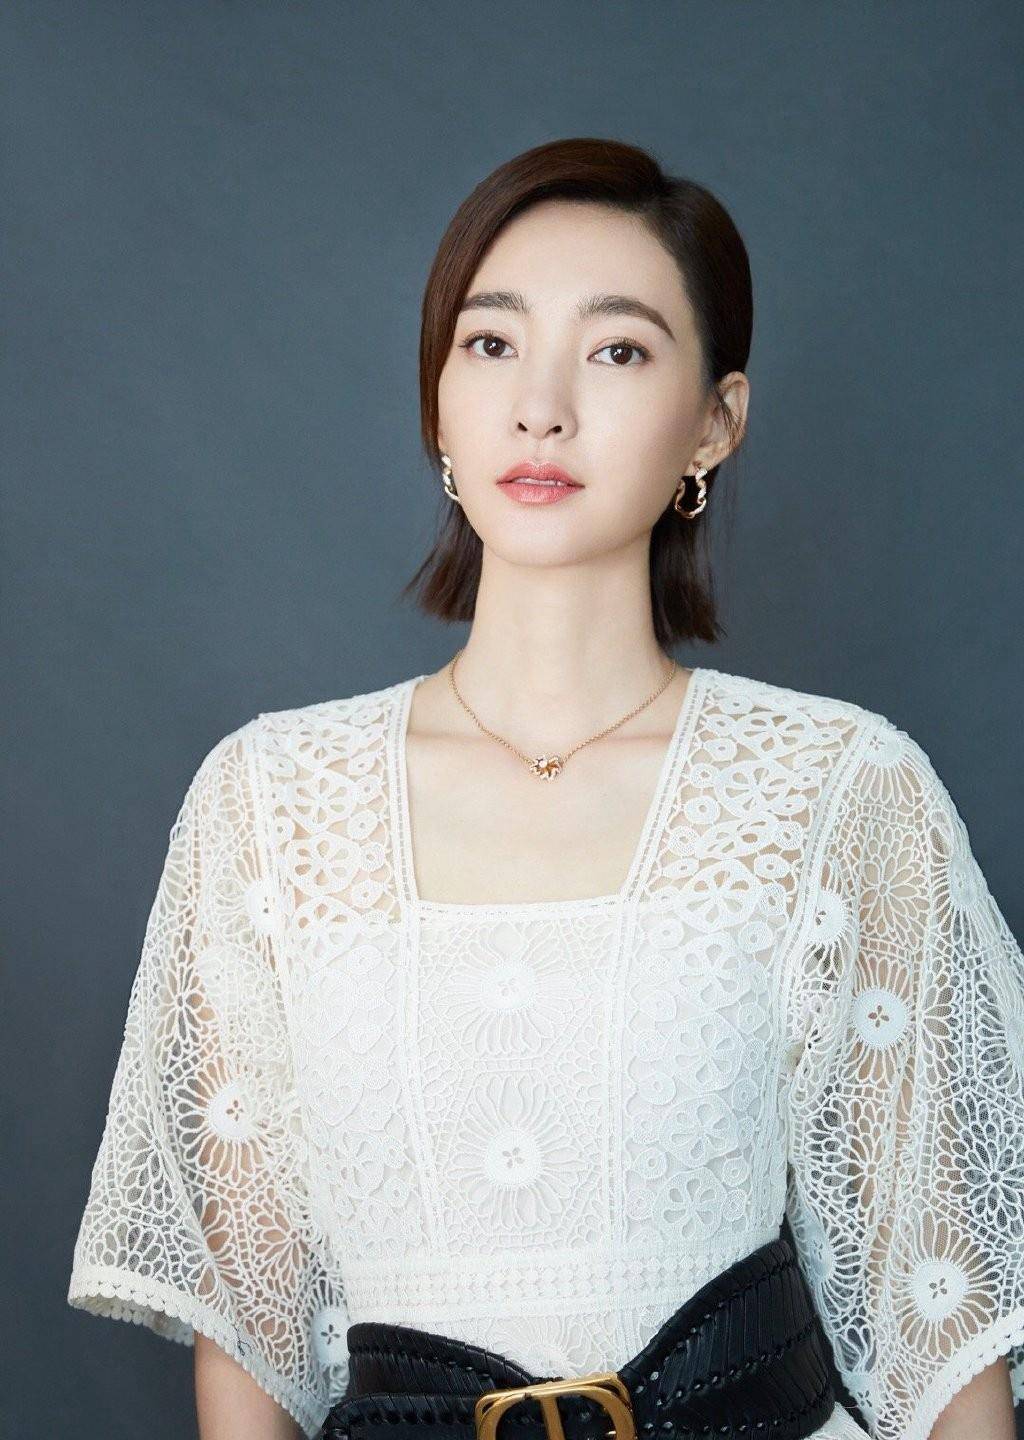 原创35岁王丽坤穿薄纱连衣裙衬出奶白水美肌肤不愧是素颜女神